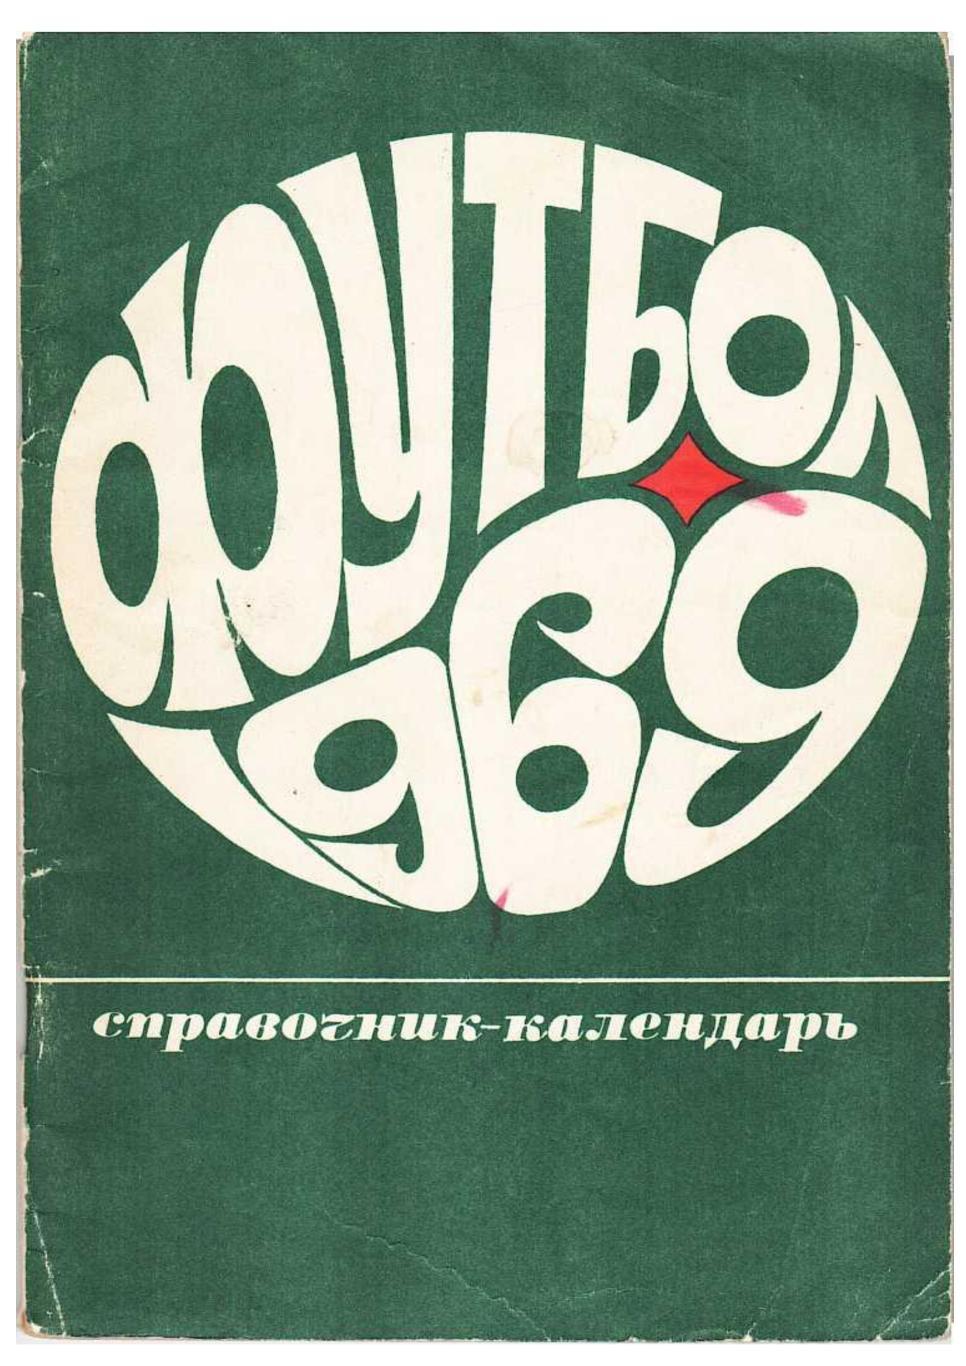 Футбол 69. Справочник-календарь. Москва 1969.